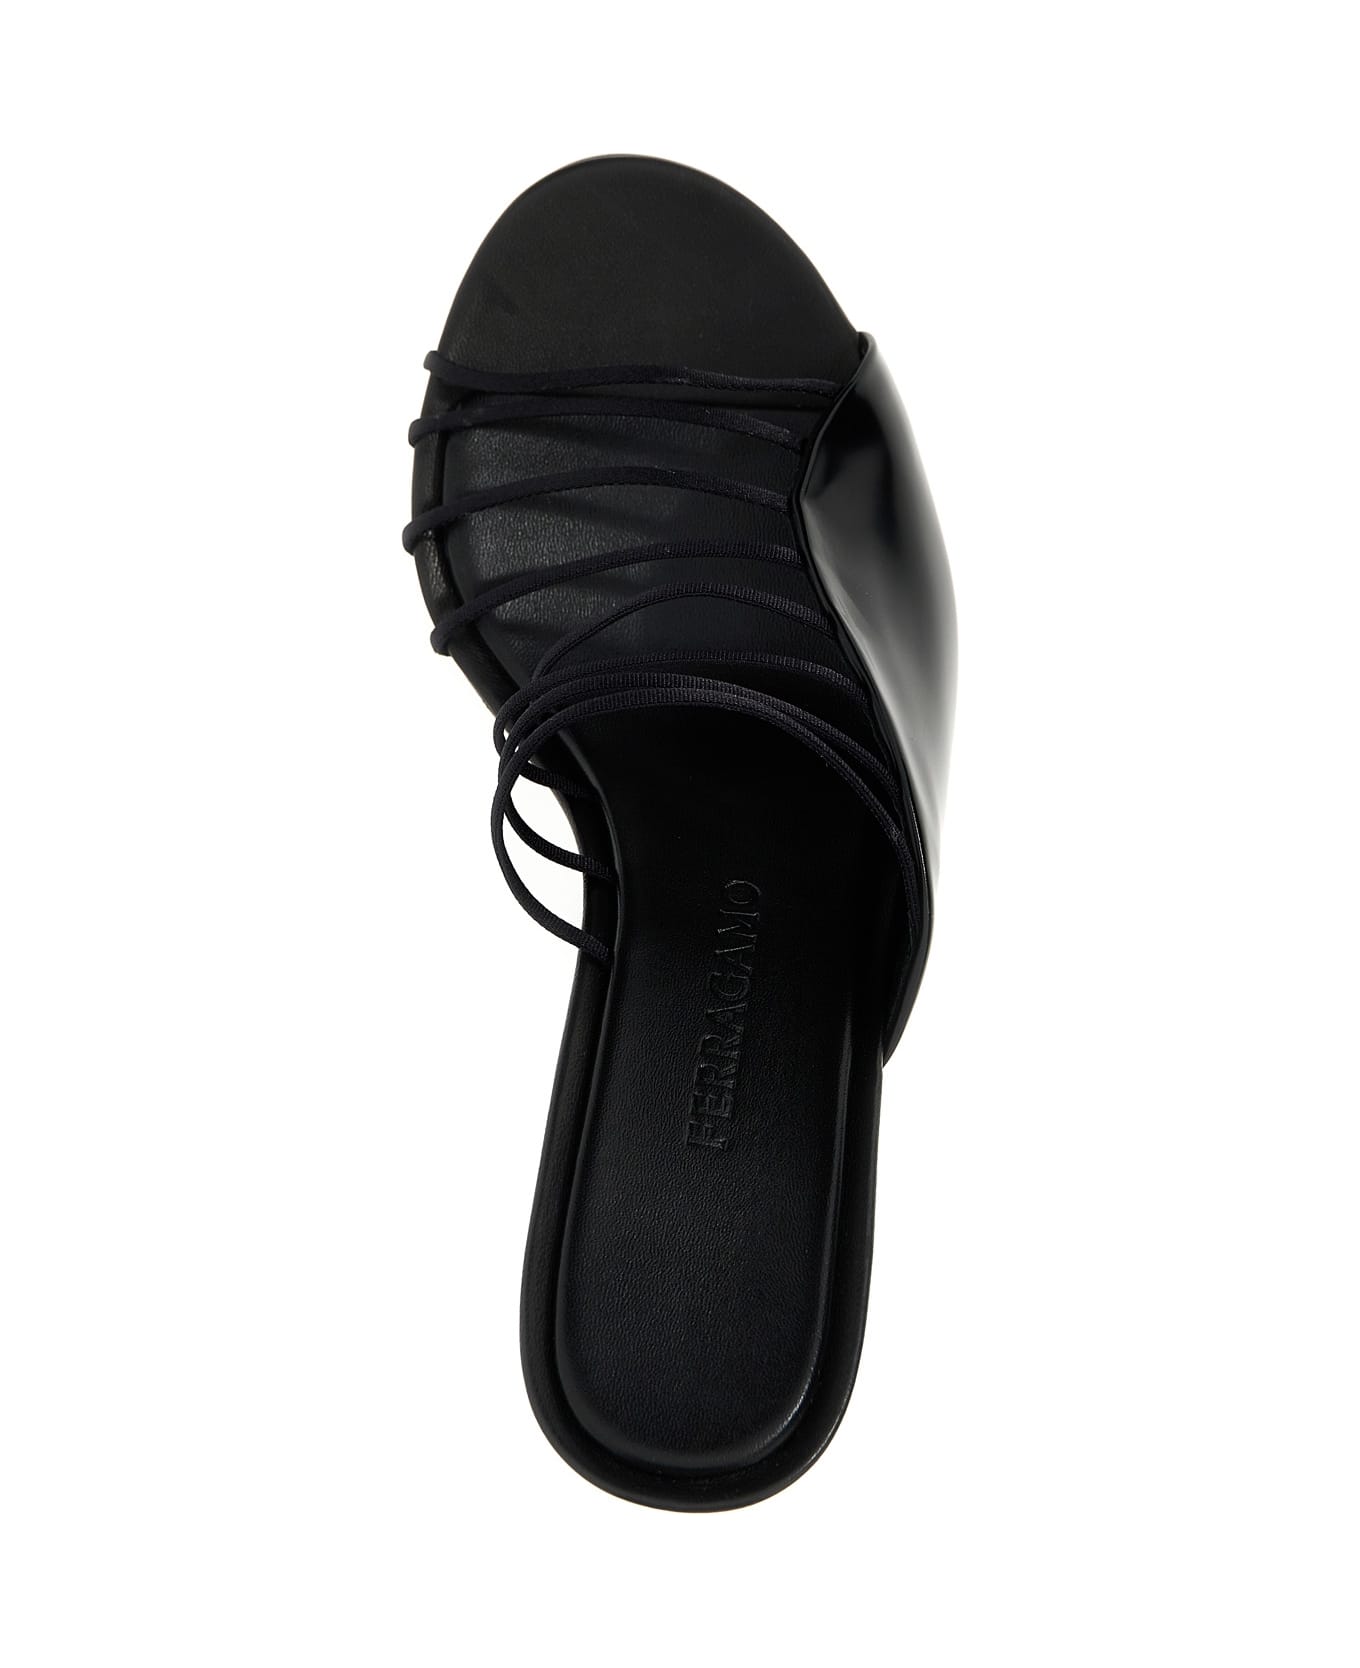 Ferragamo 'altaire' Sandals - Black  